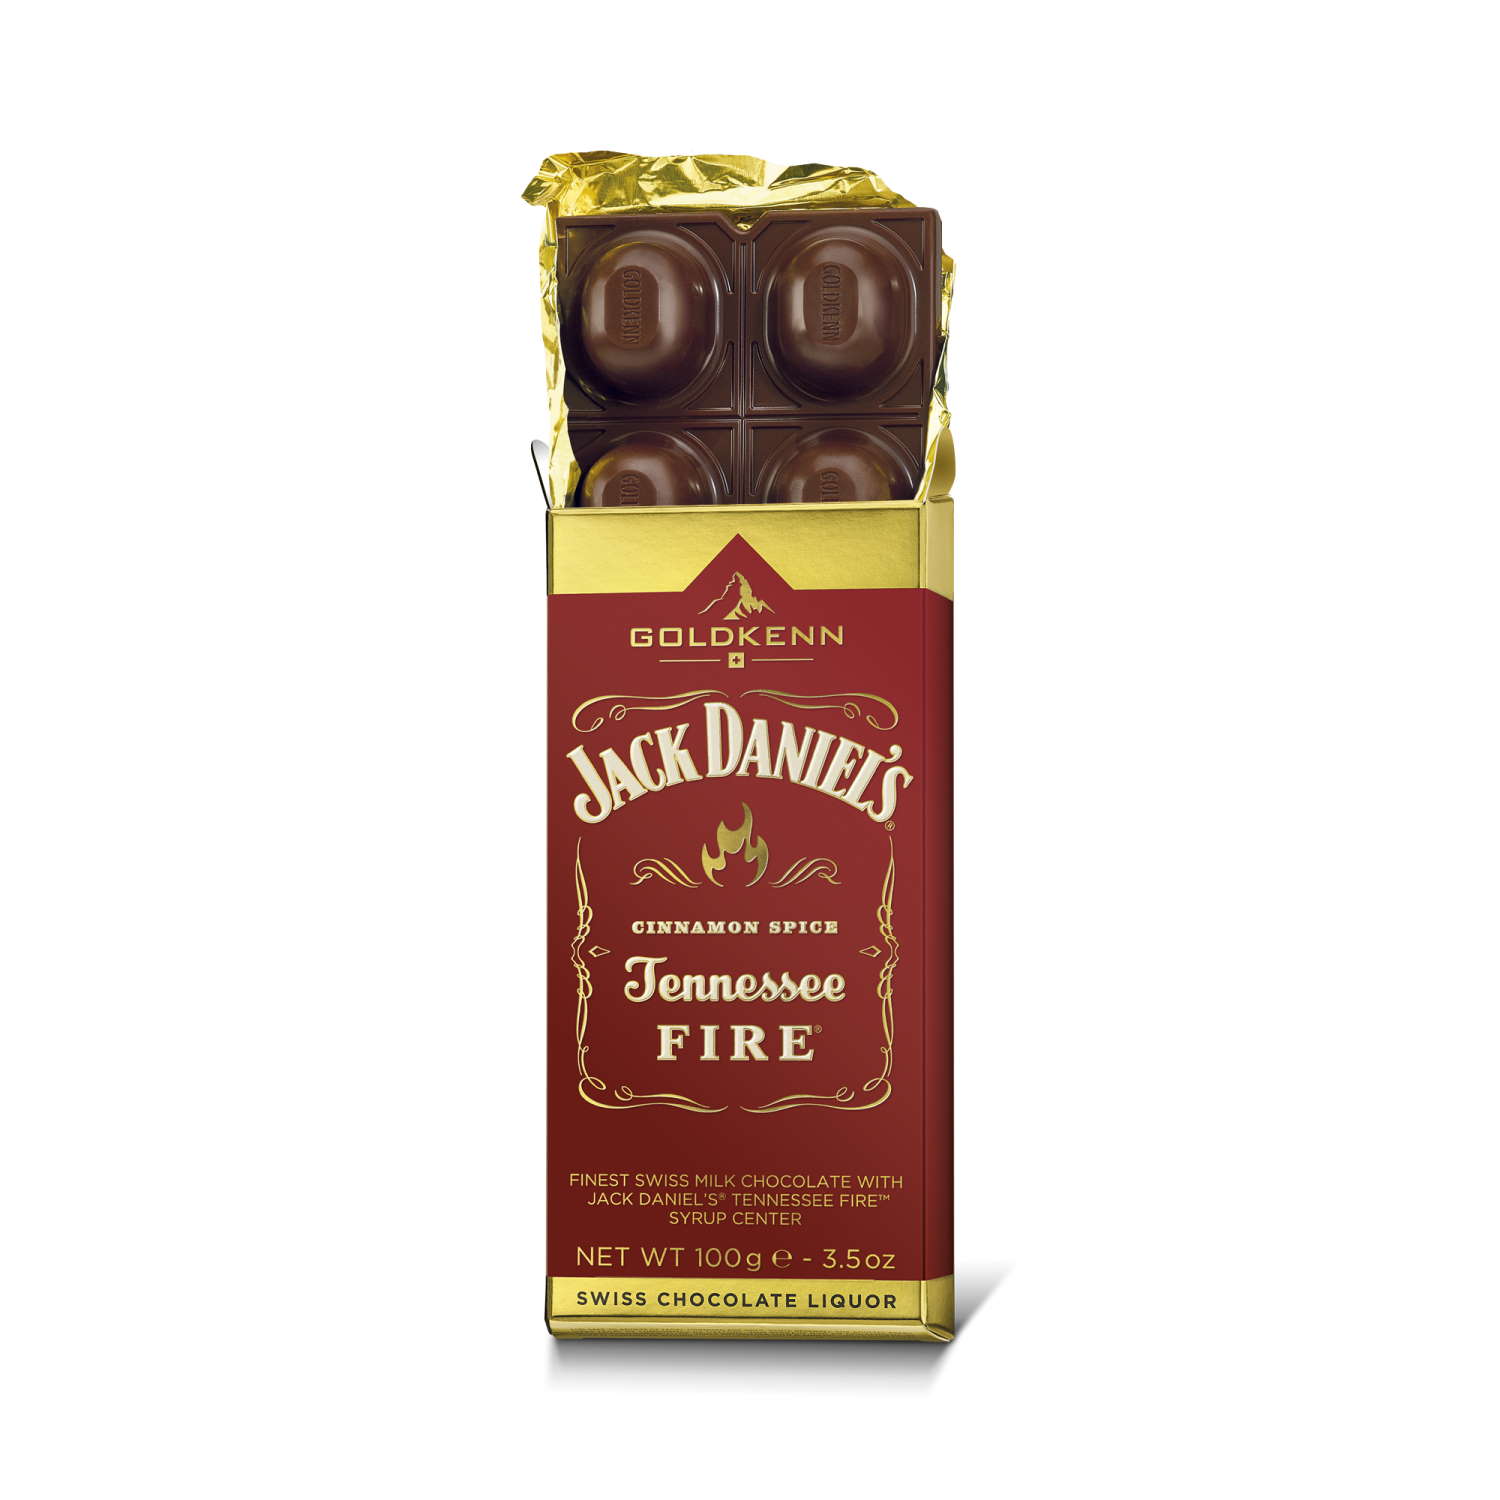 Goldkenn Jack Daniel's Tennessee Fire Chocolate Bar Open